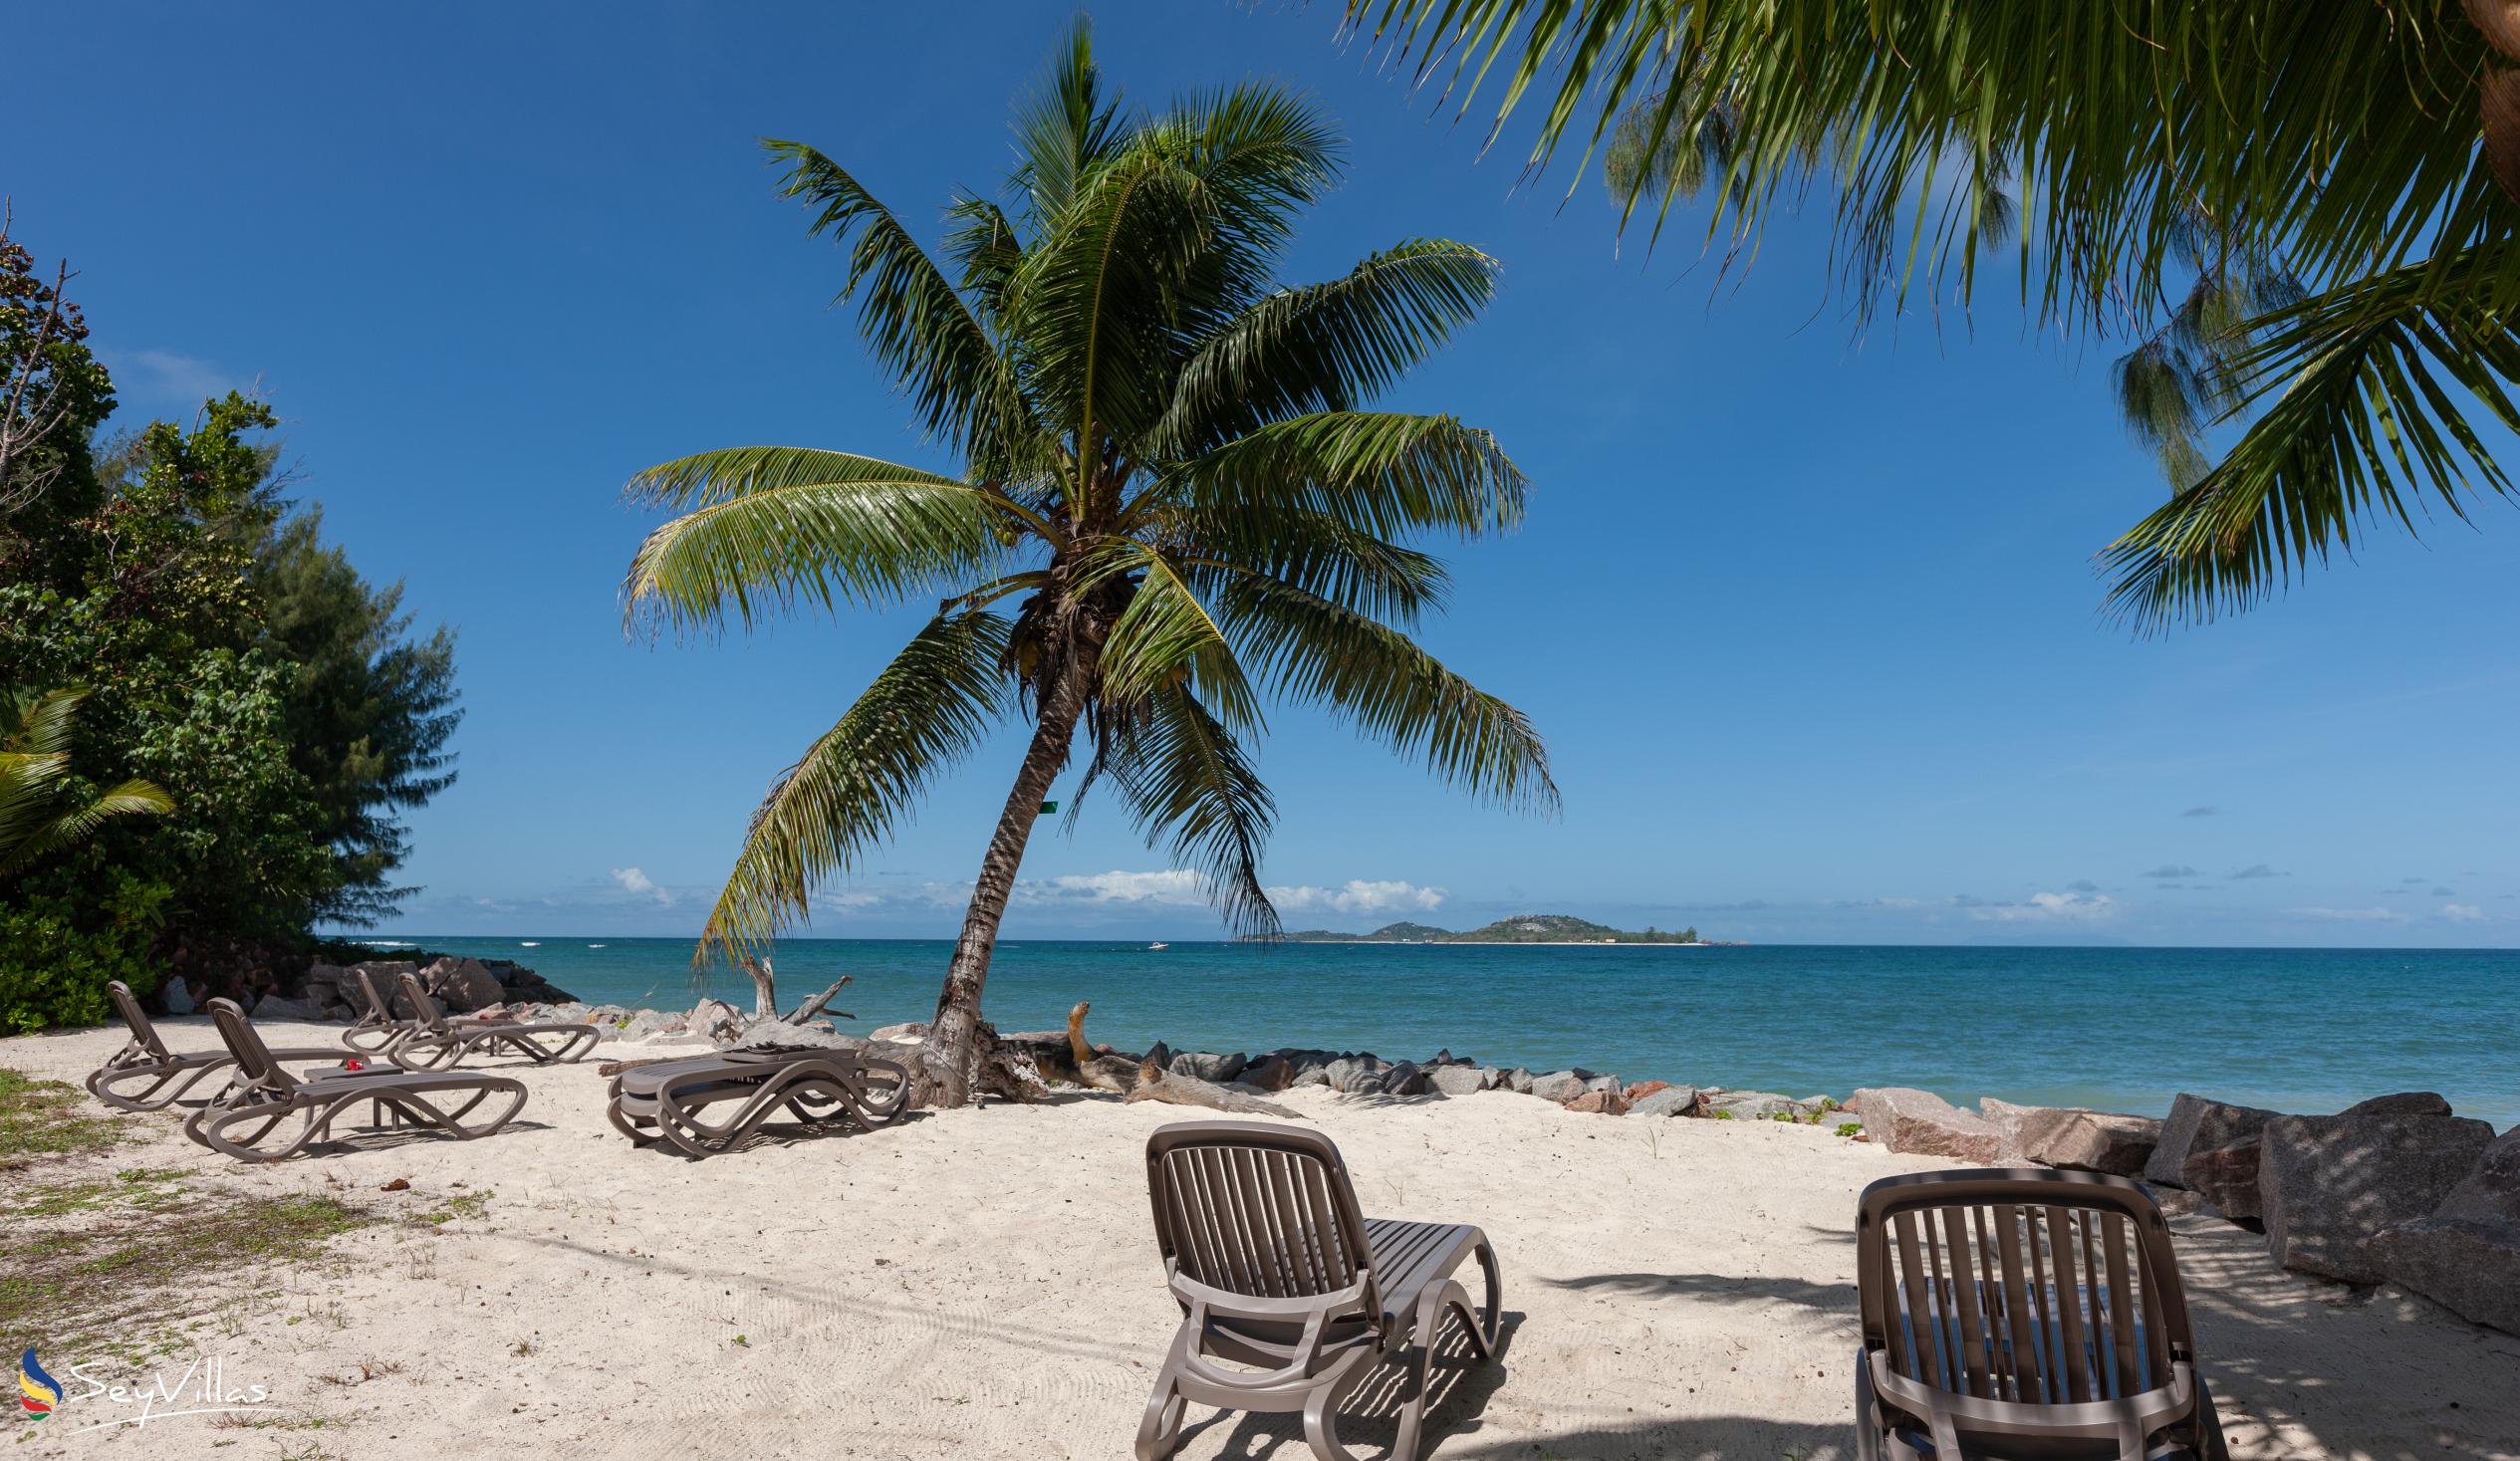 Foto 37: Villas Coco Beach - Posizione - Praslin (Seychelles)